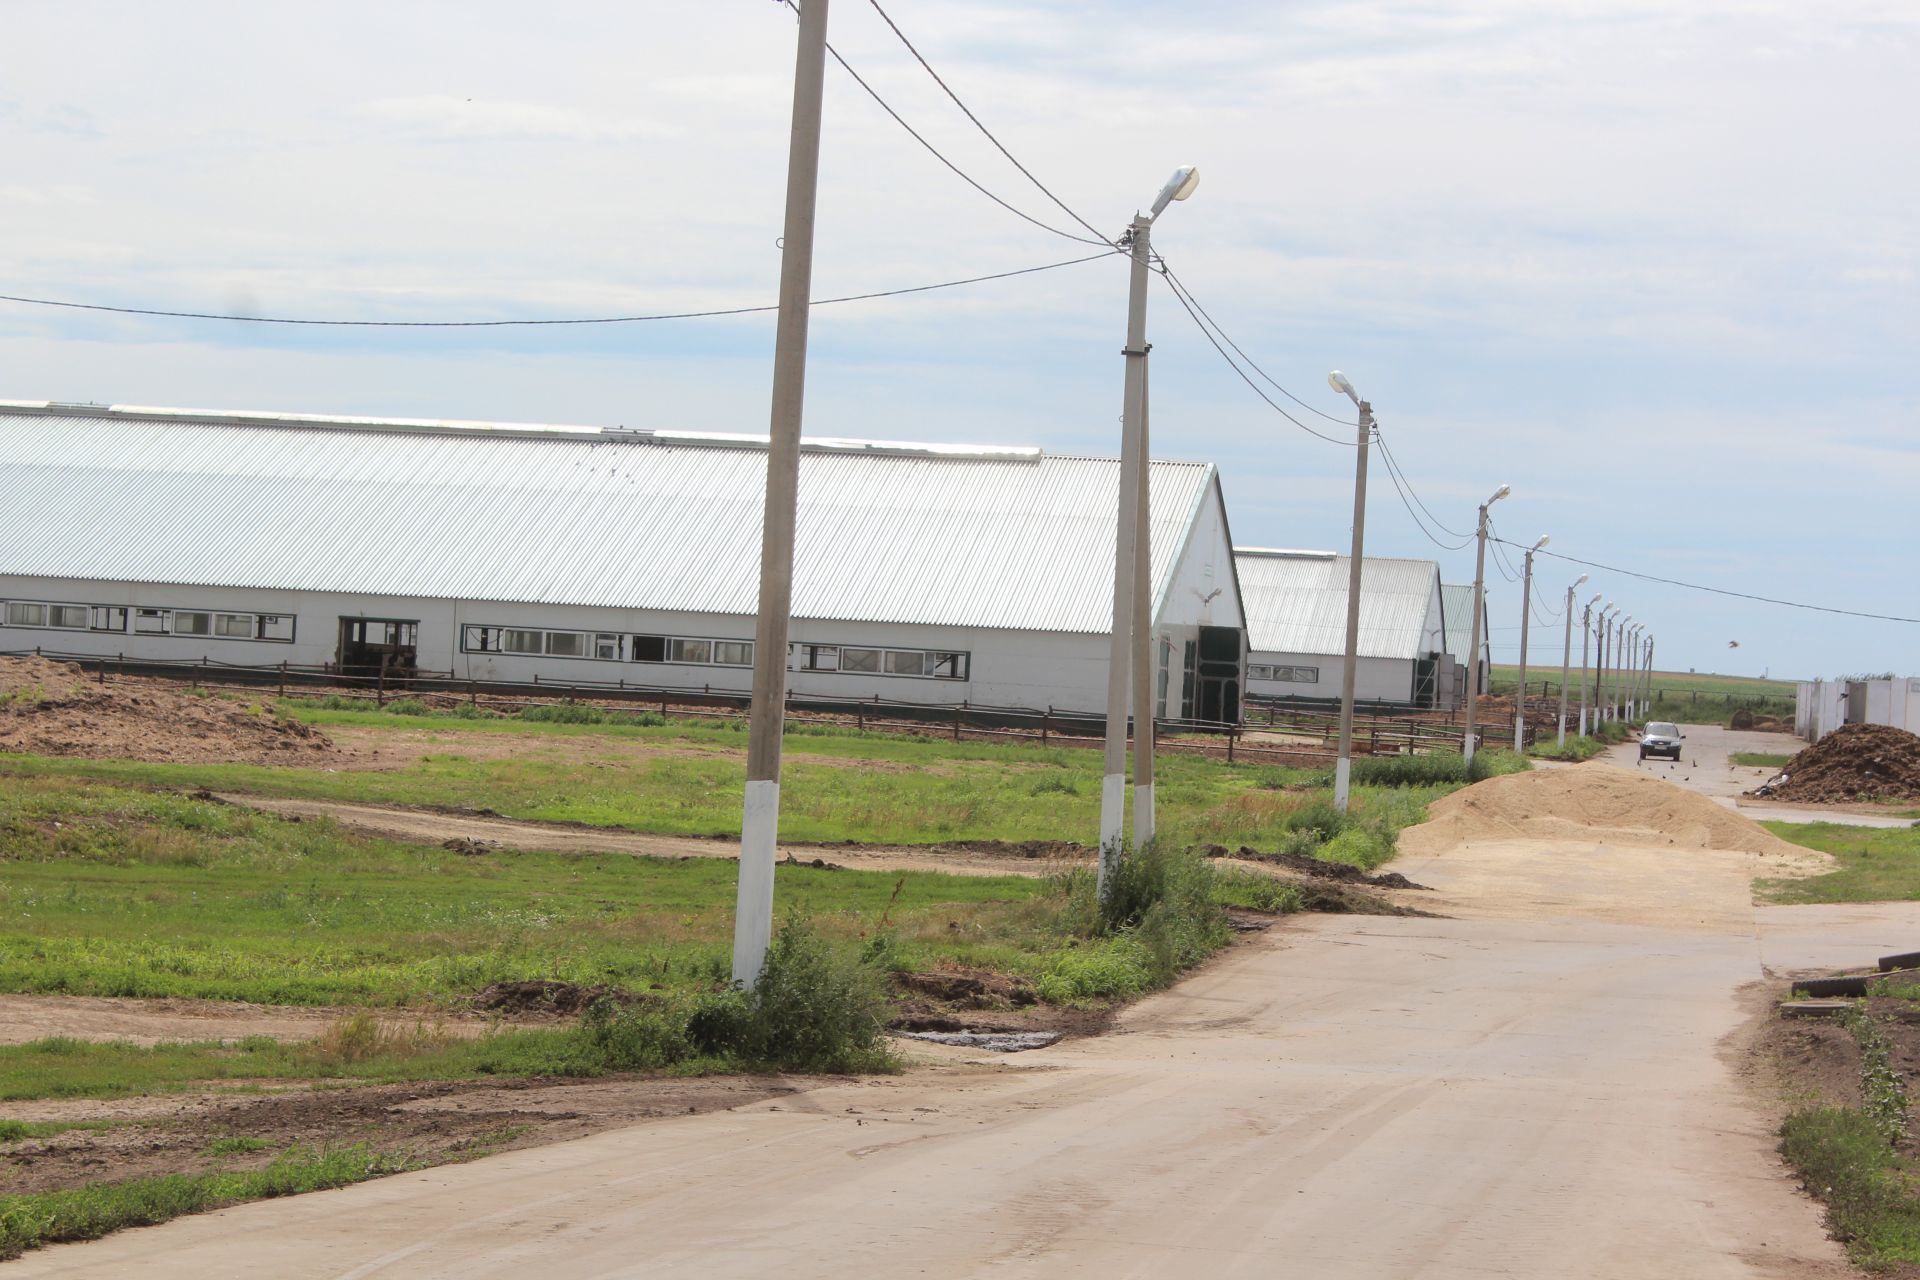 В хозяйствах Нурлатского района приступили к заготовке плющеного зерна